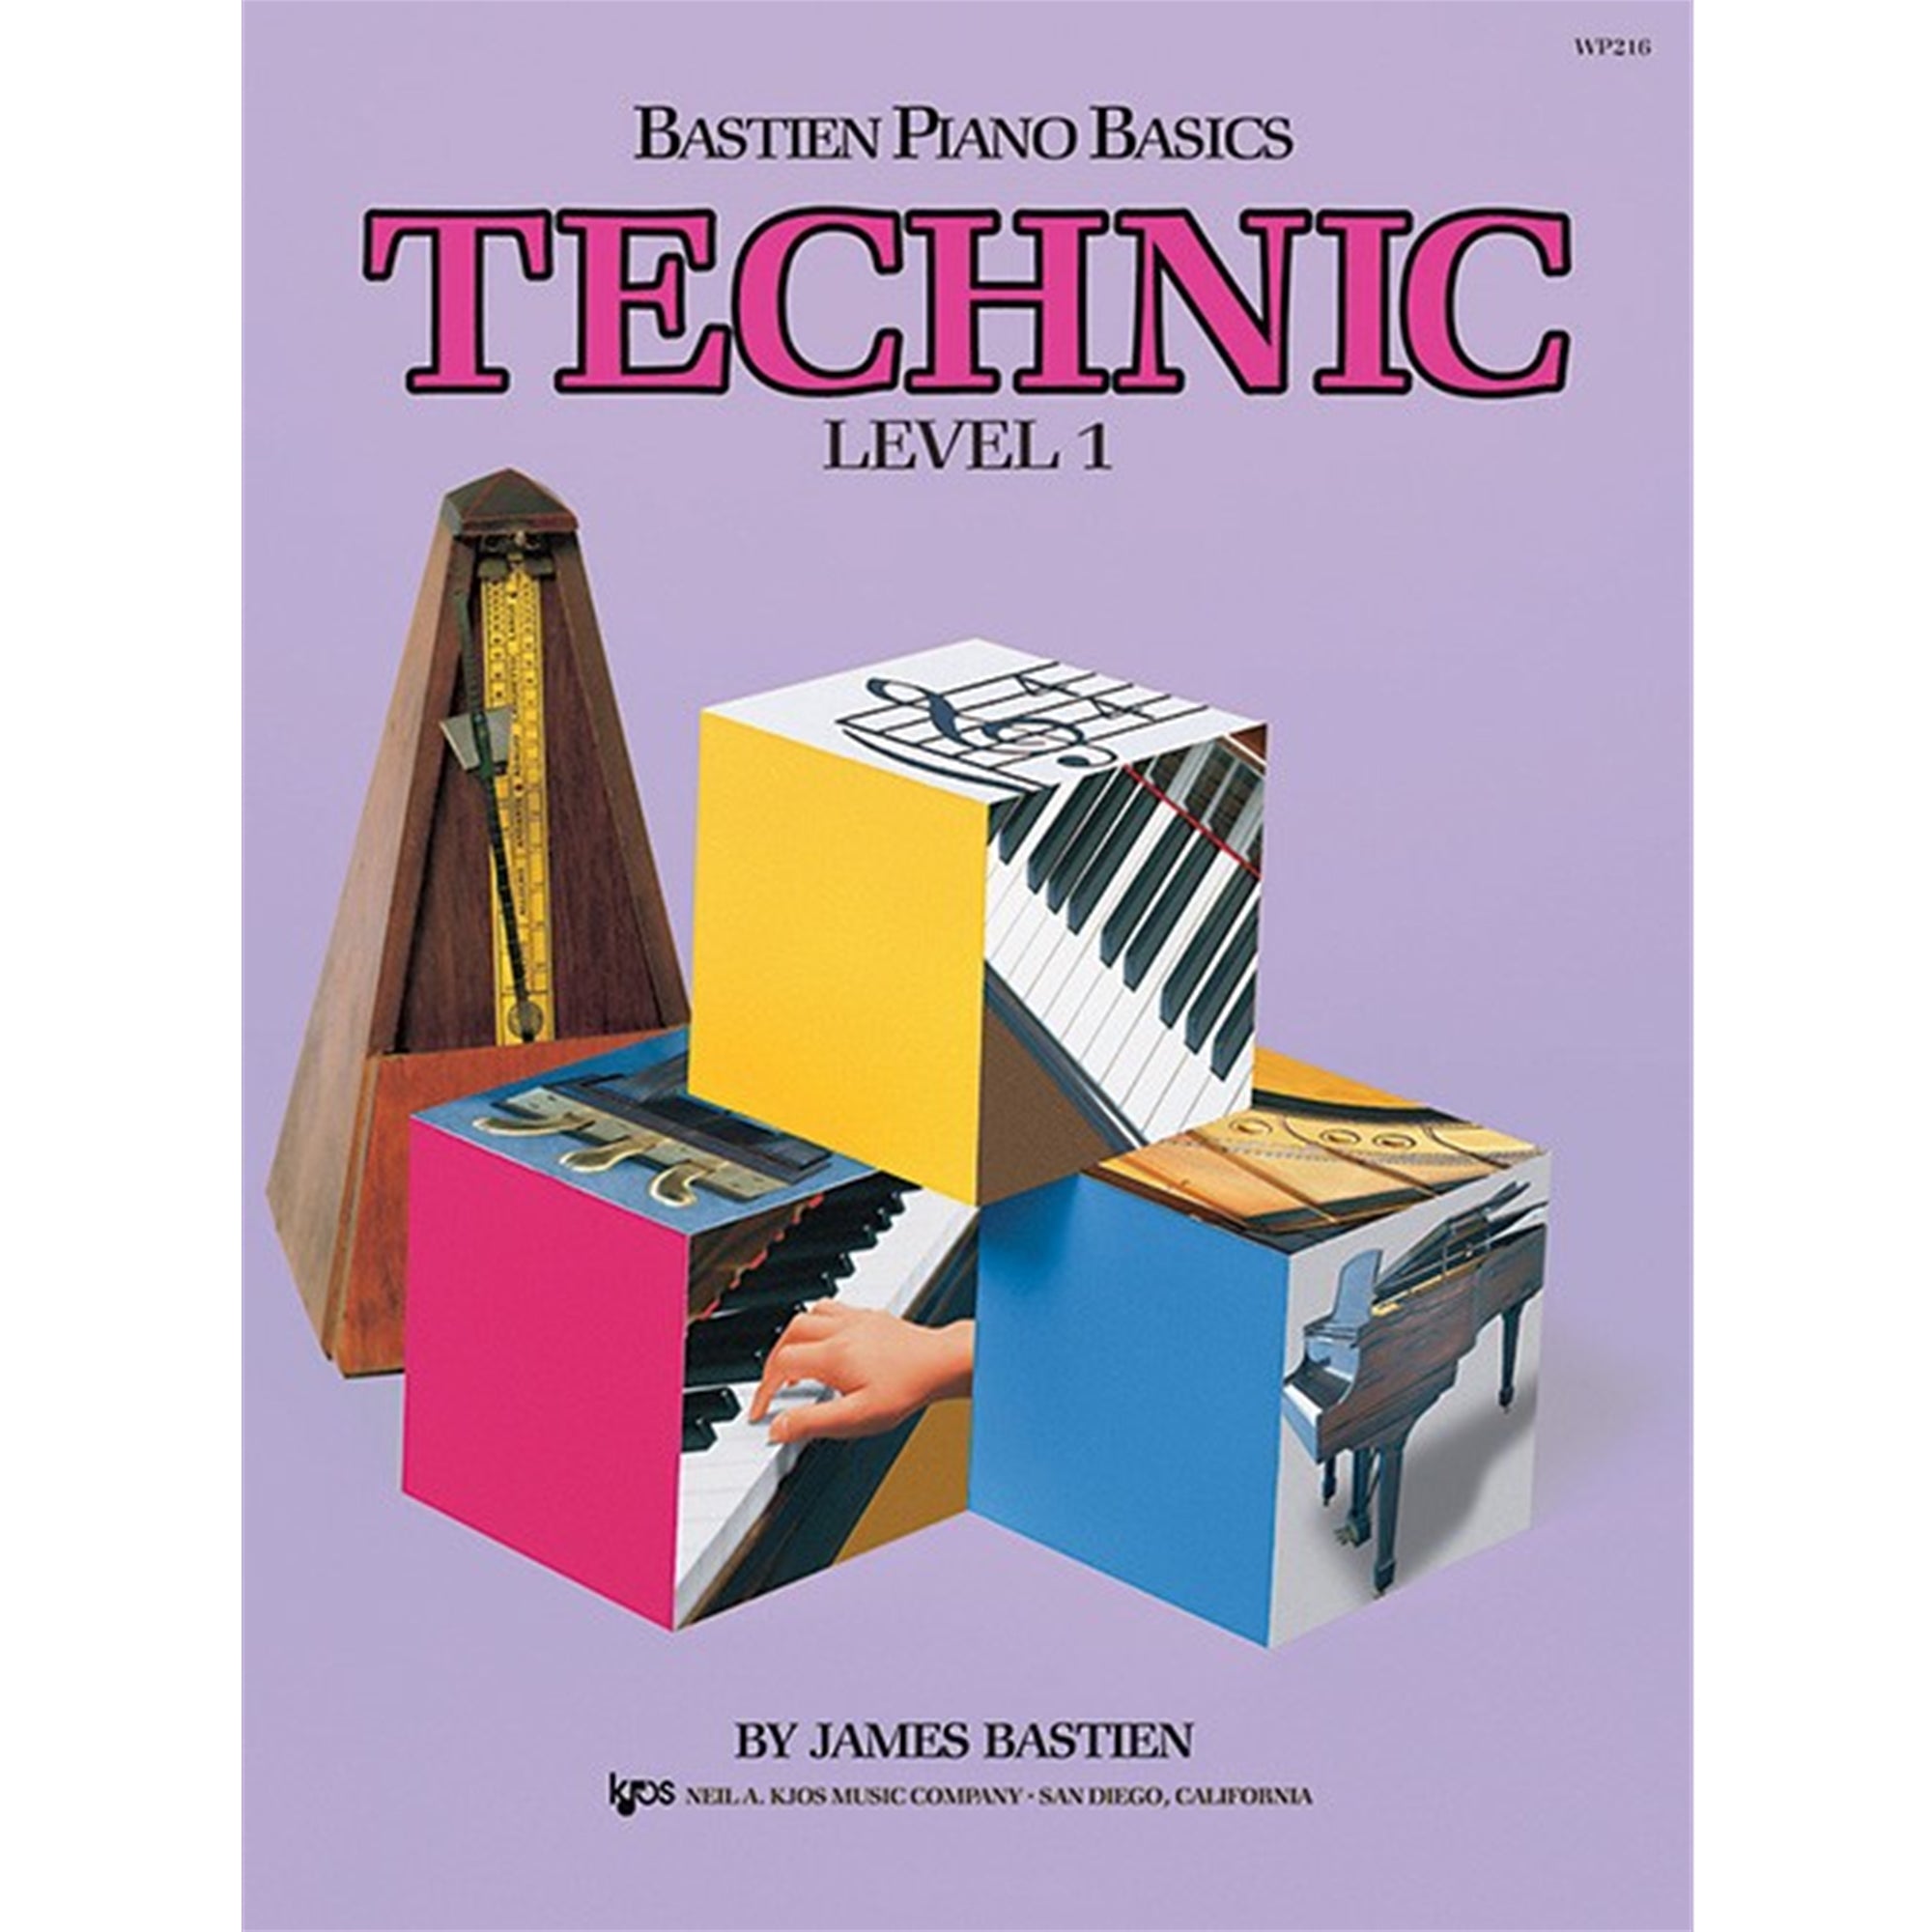 KJOS WP216 Bastien Piano Basics Technic Level 1